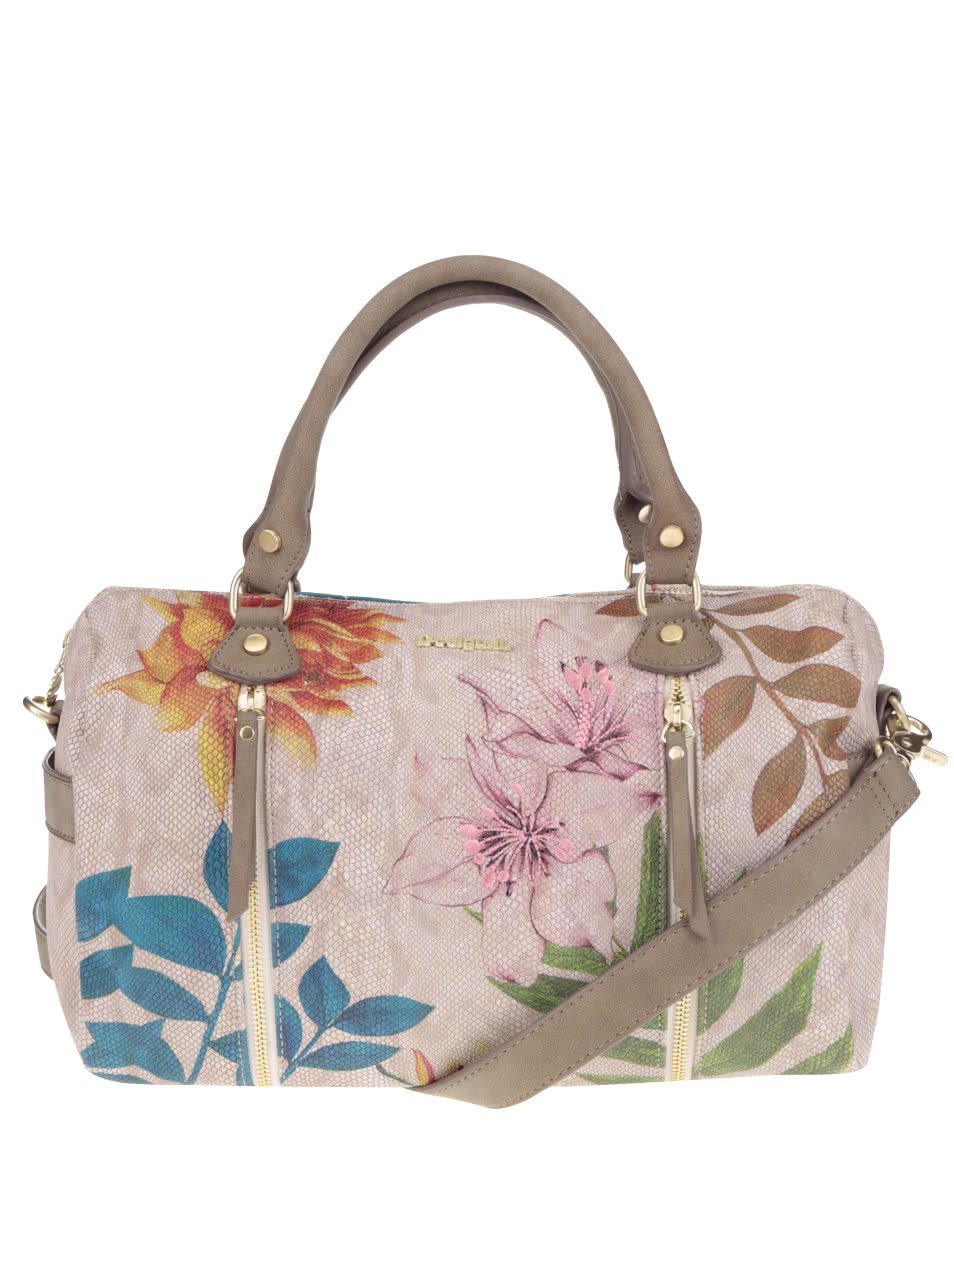 Béžová kabelka s barevnými květy a listy Desigual Sidney Mogly